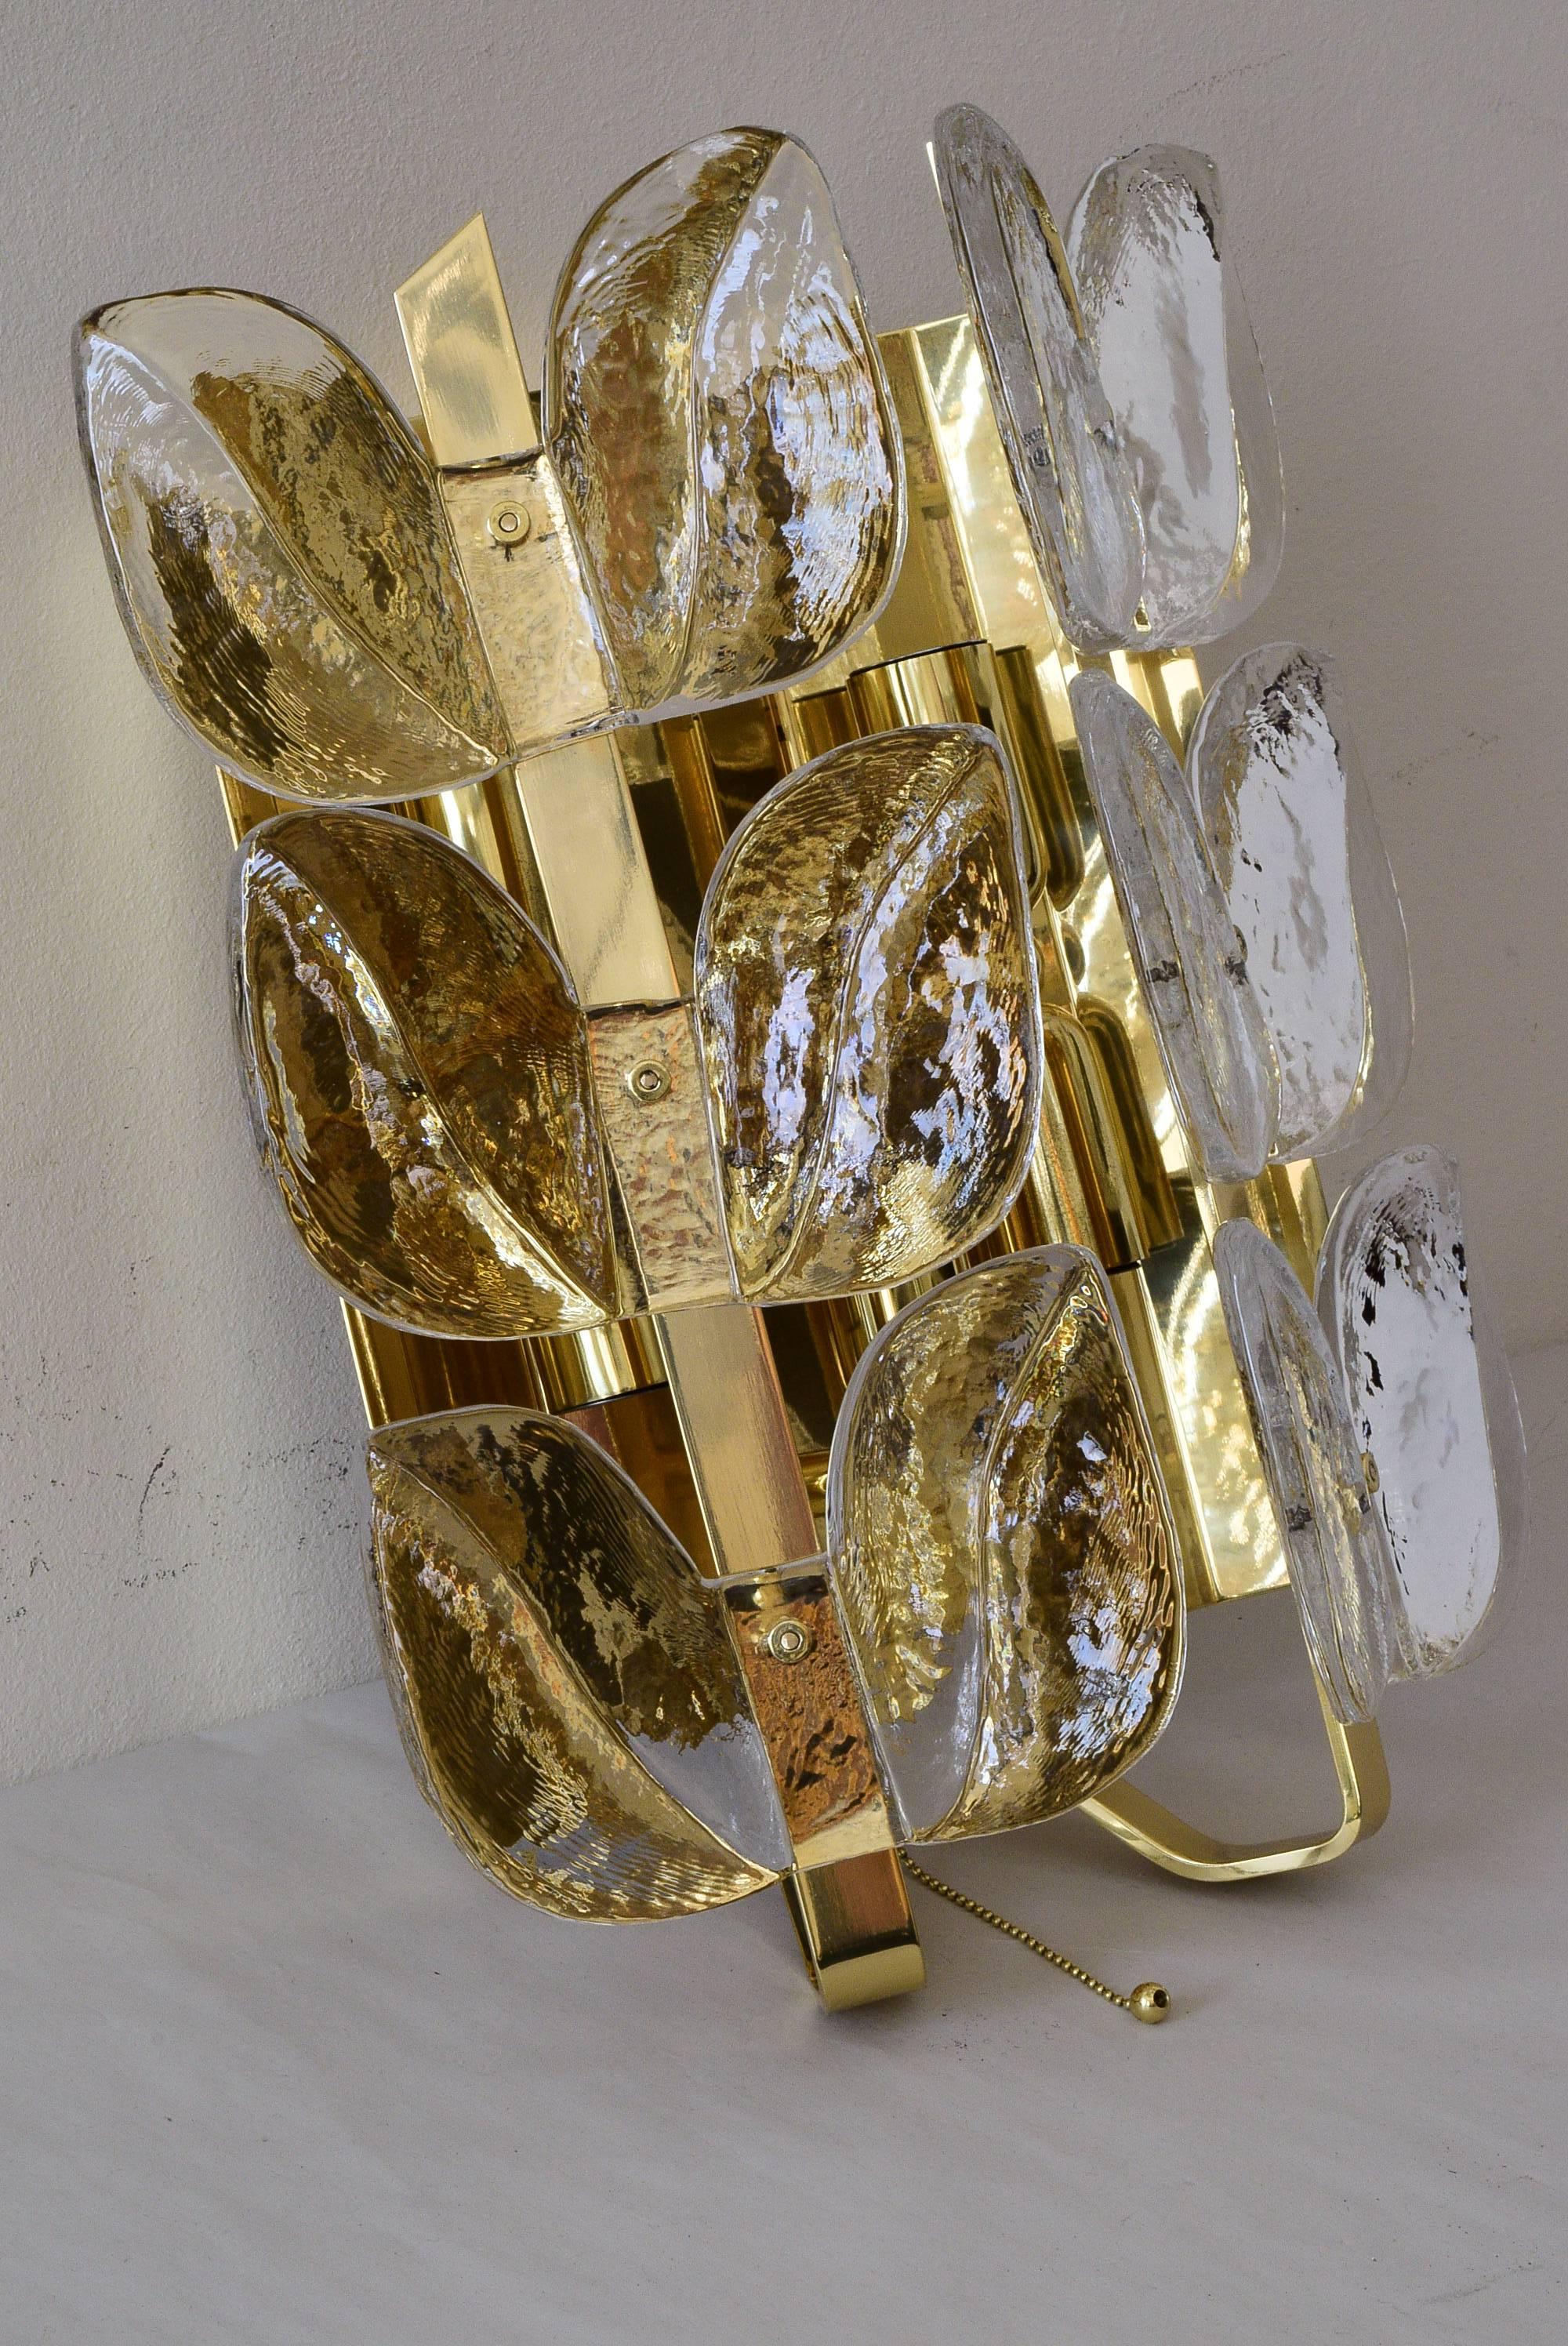 Wandleuchter aus Blattglas und vergoldetem Messing von J.T Kalmar.
Fünf Glühbirnen.
Poliert und einbrennlackiert.